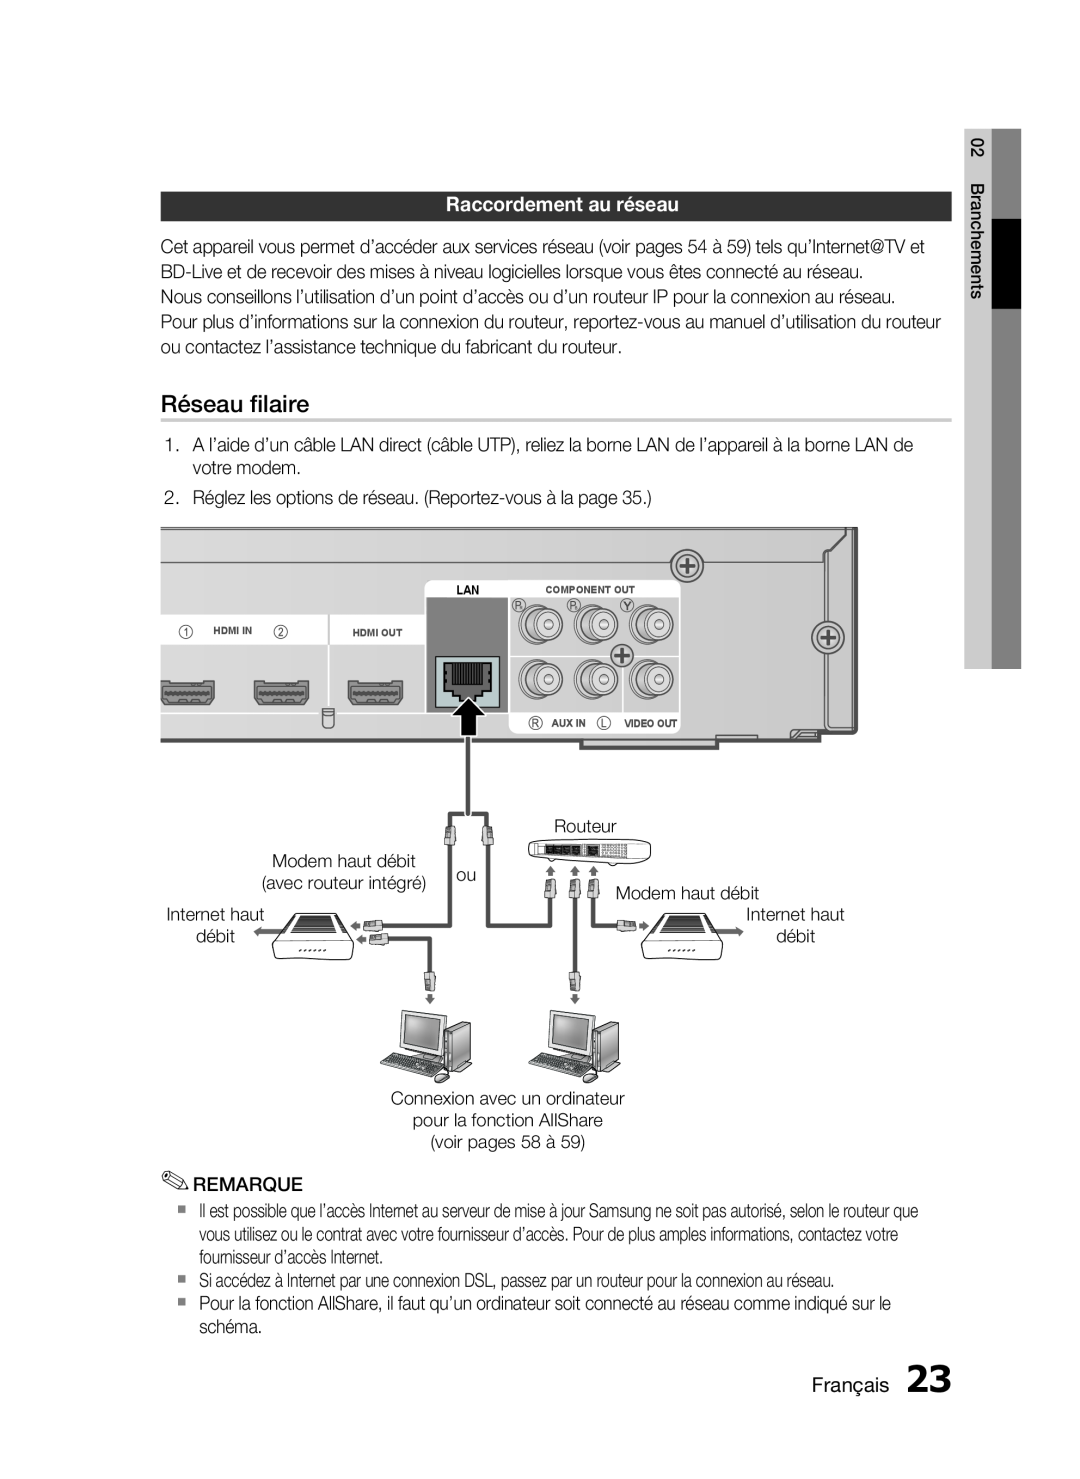 Samsung HT-C6200/XEF manual Réseau ﬁlaire, Raccordement au réseau, Français 